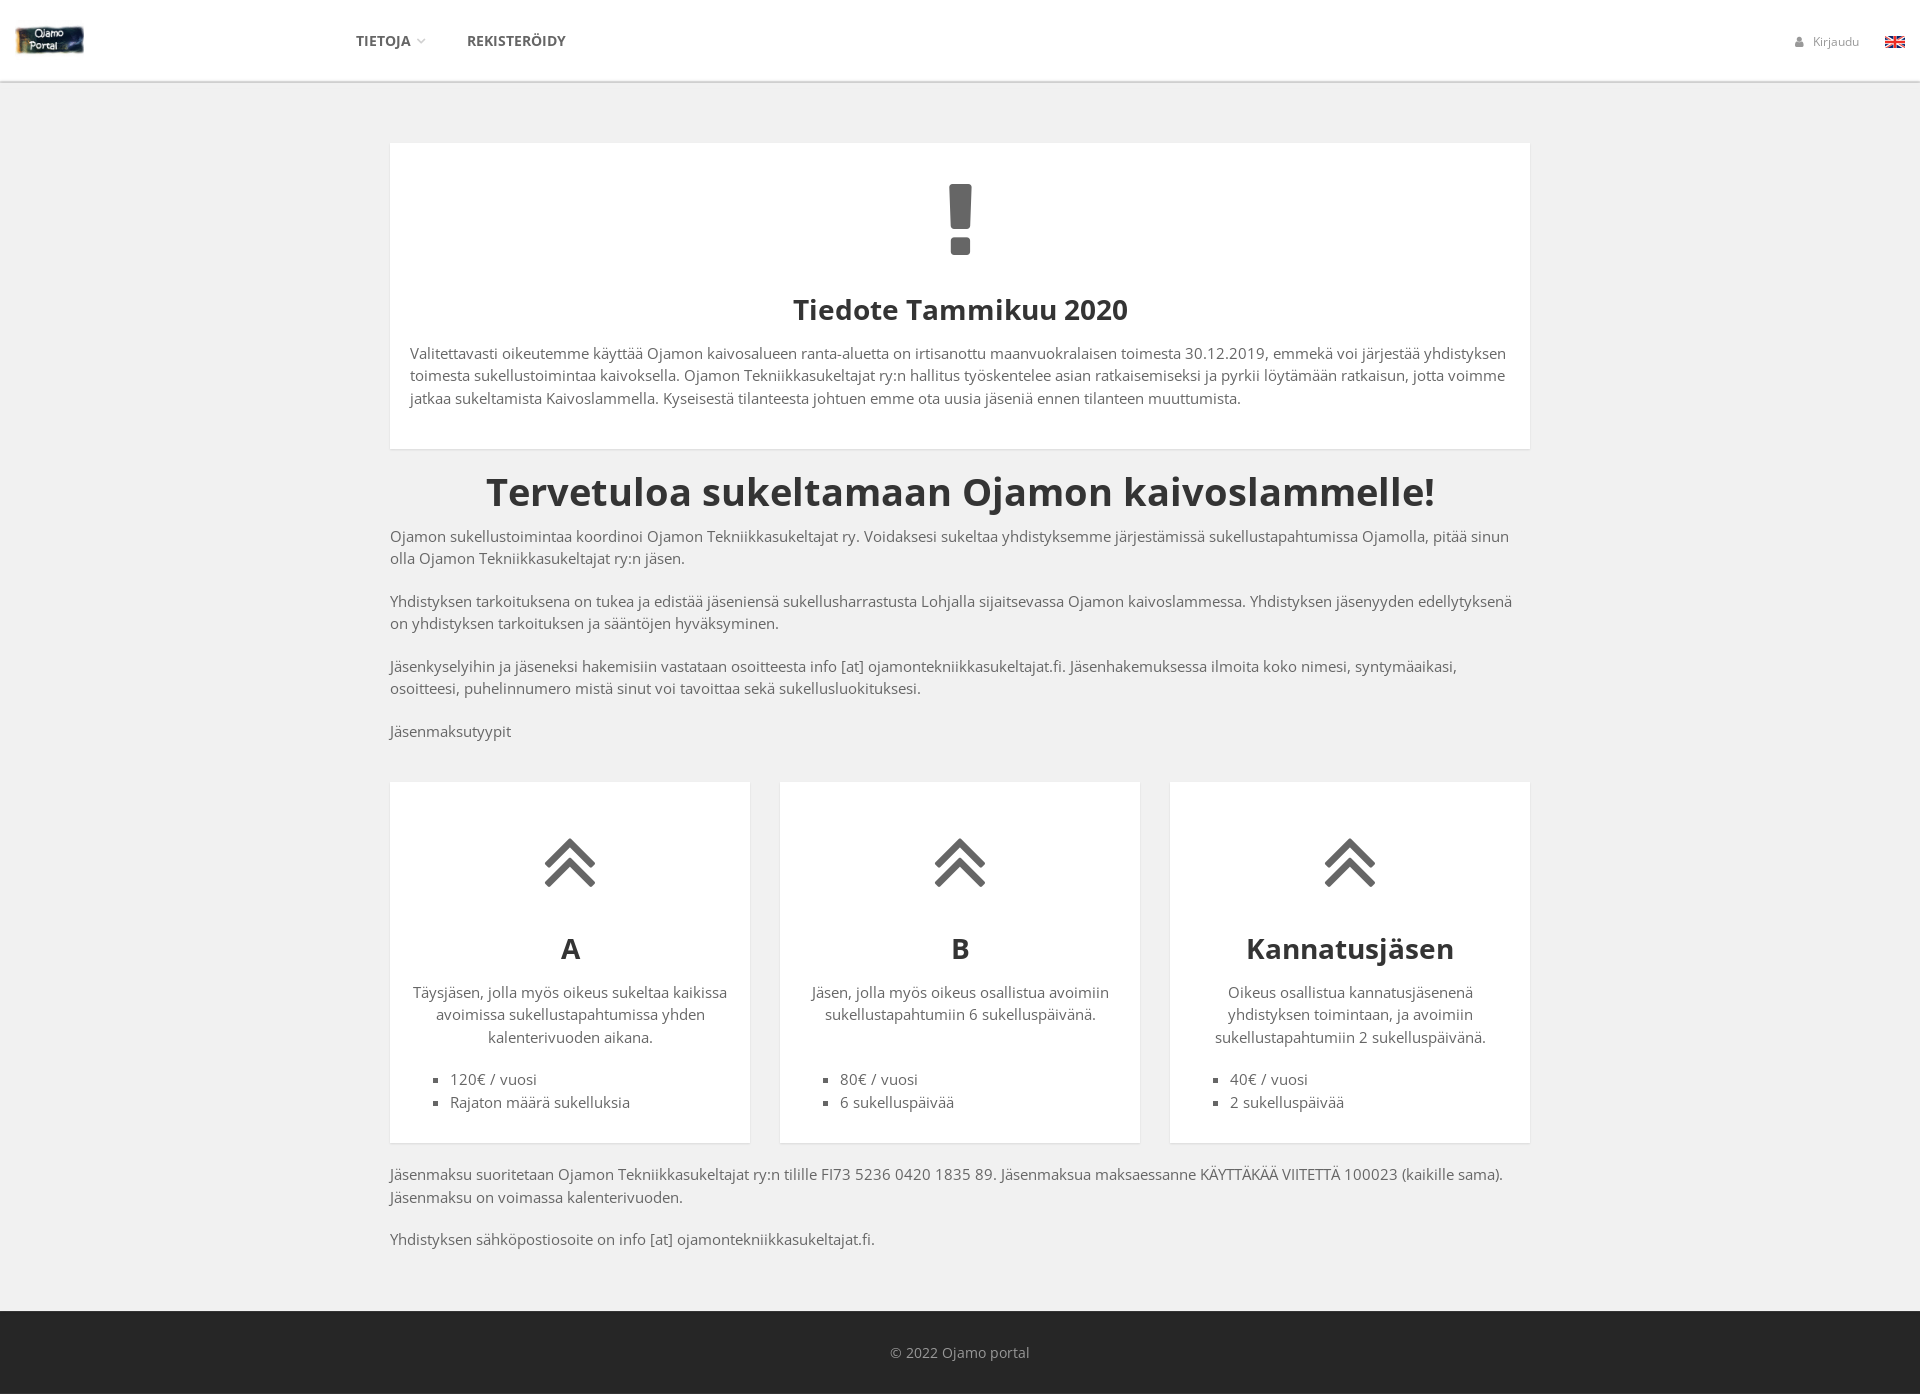 Näyttökuva ojamontekniikkasukeltajat.fi